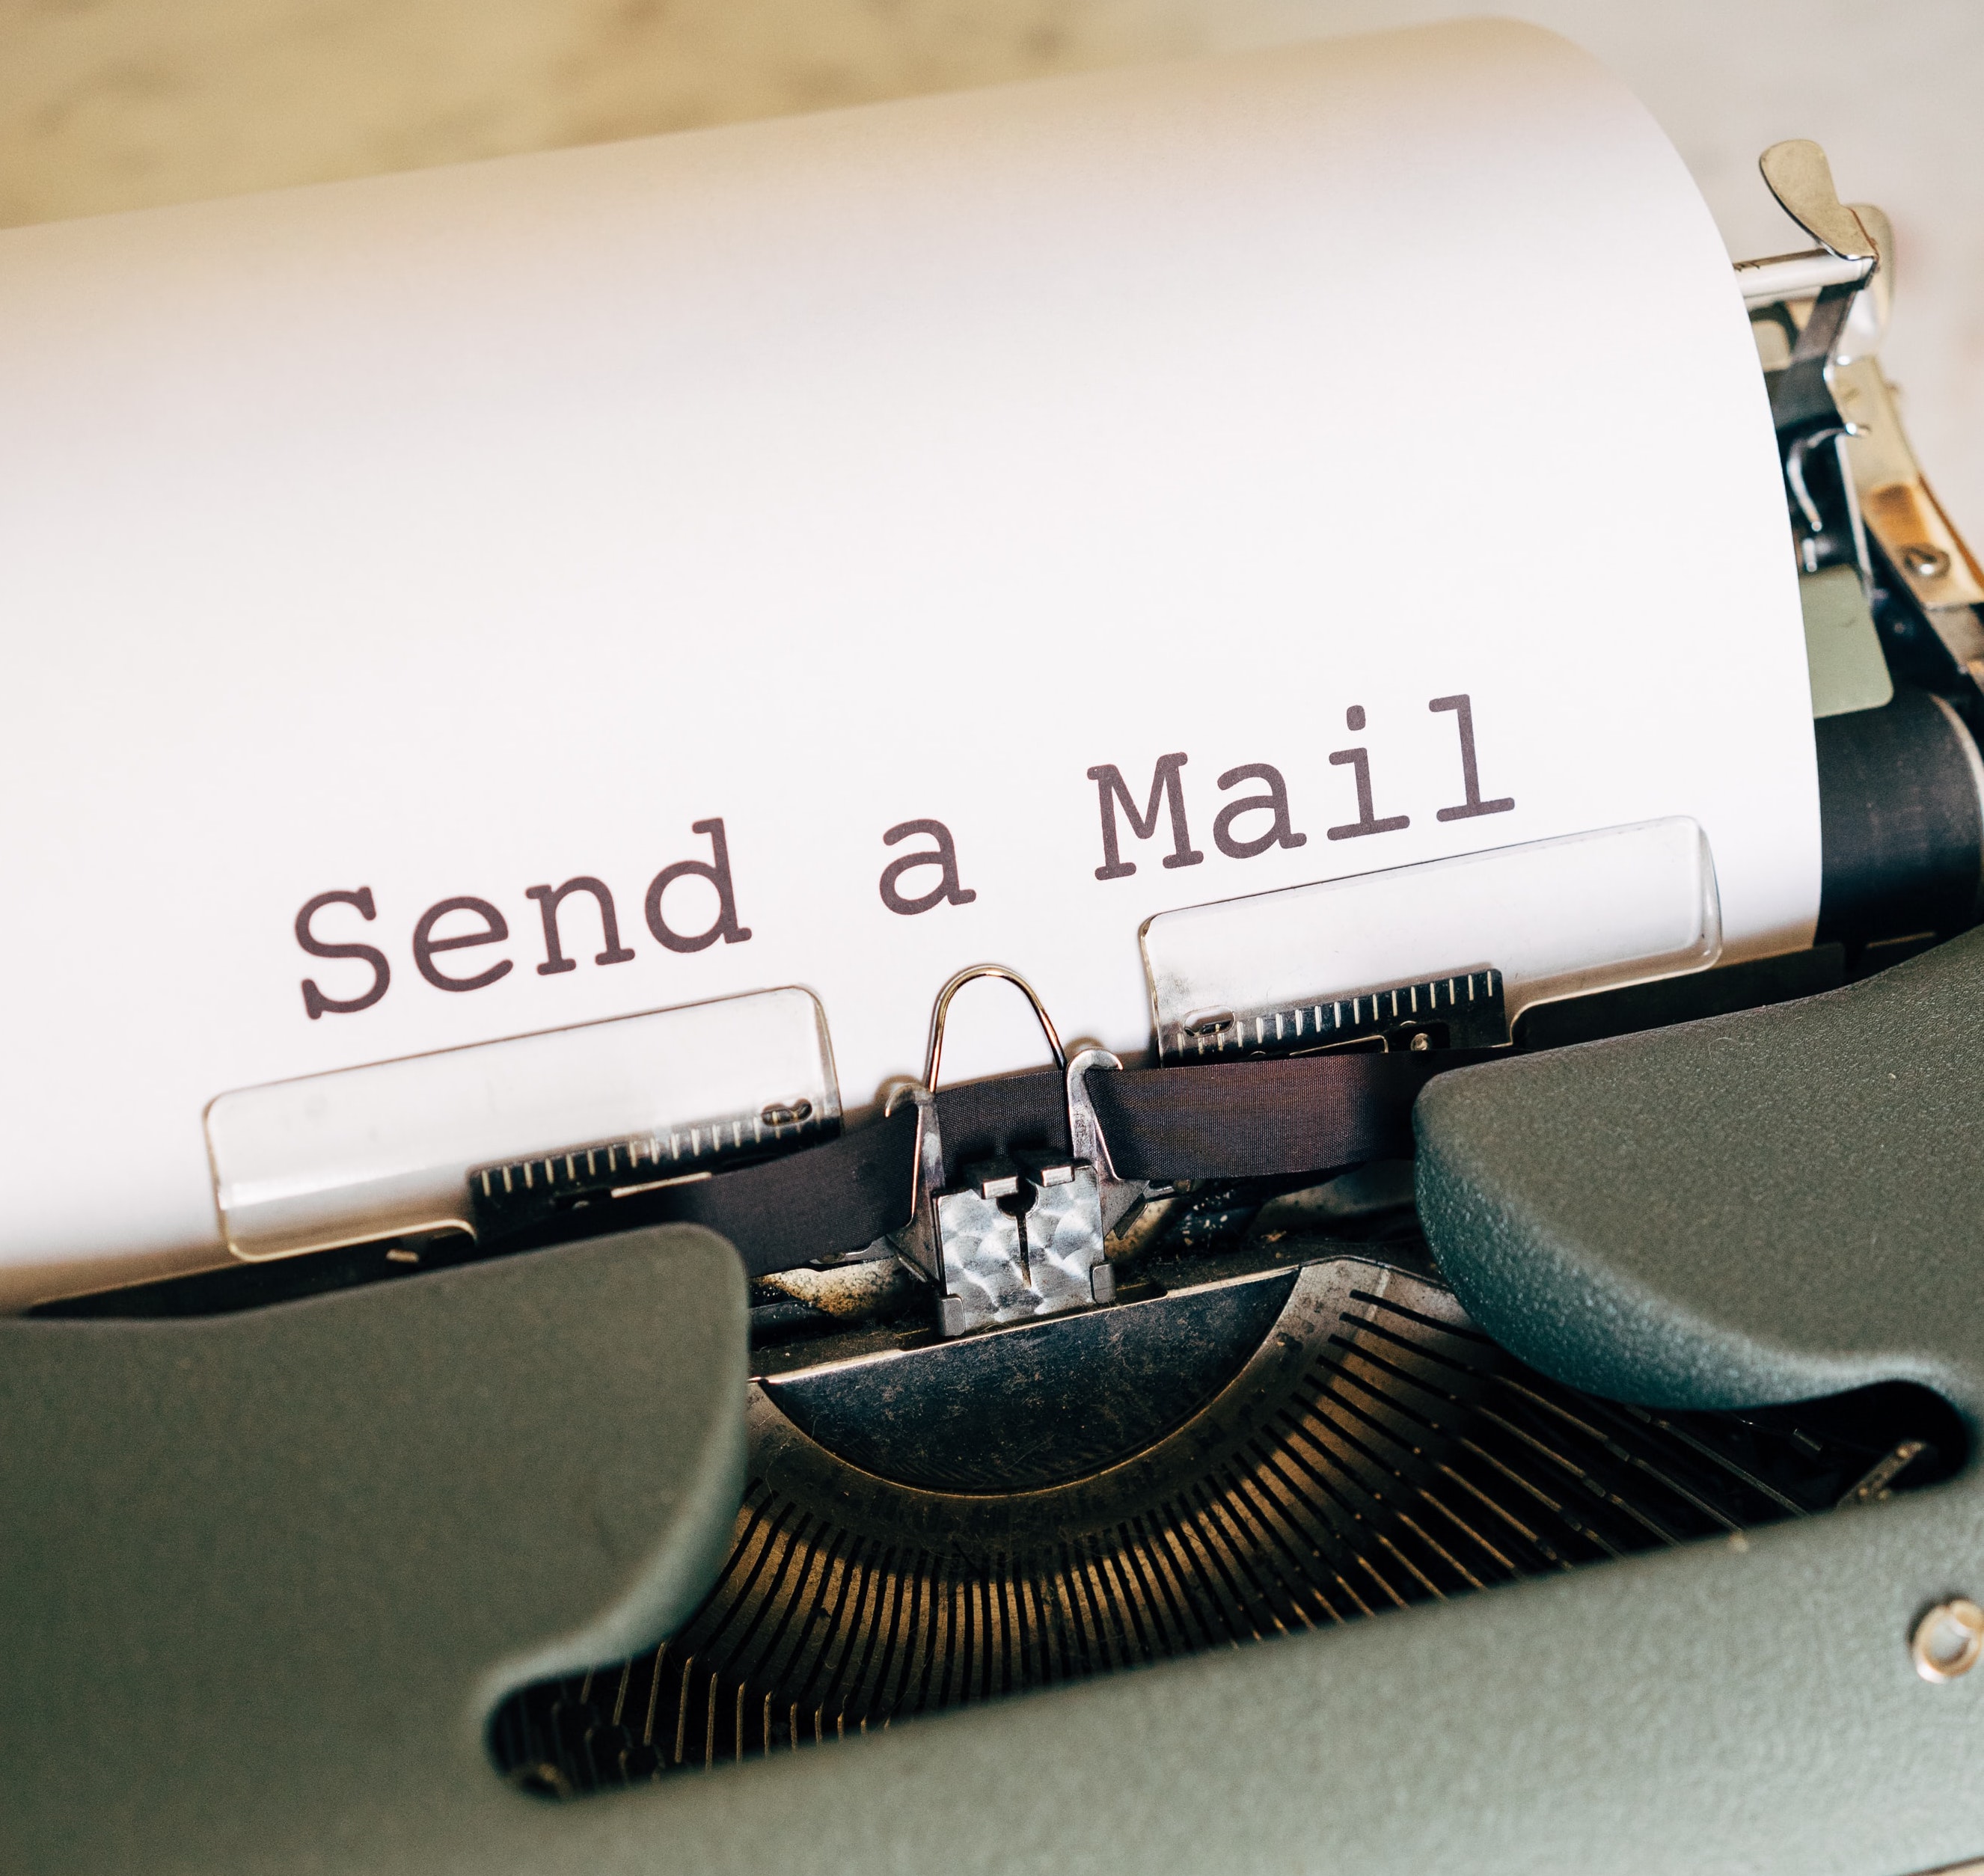 machine à ecrire avec une feuille sur laquelle il est écrit "send a mail"